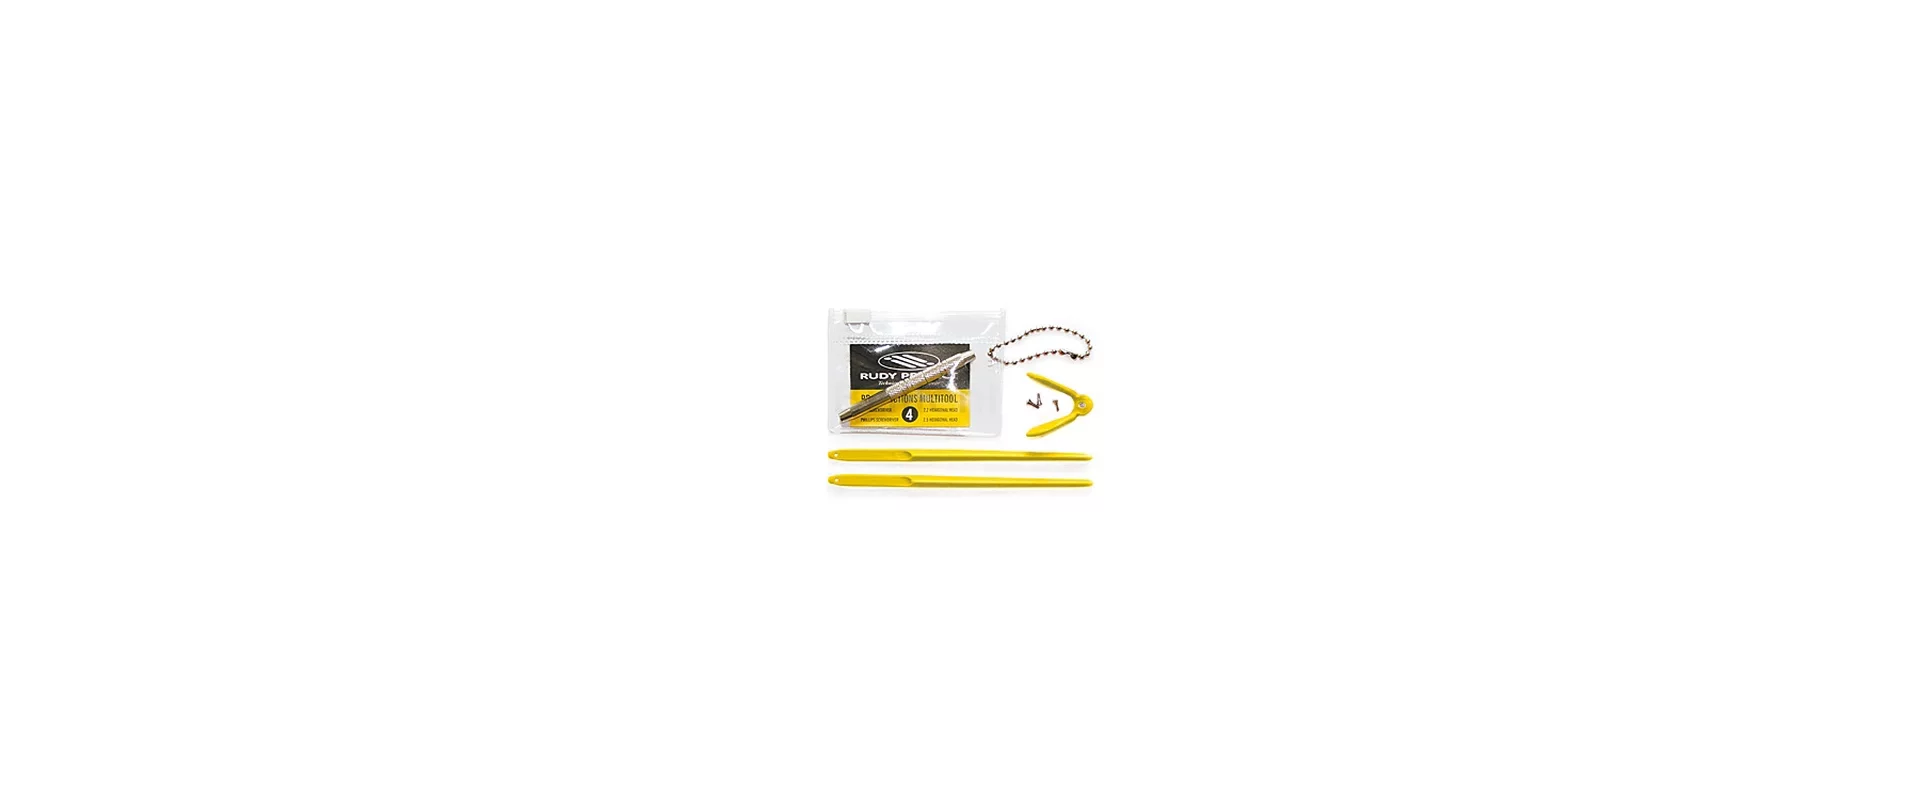 Ремкомплект Для Очков Rudy Project Noyz/Zyon/Genetyk Chromatic Kit Yellow